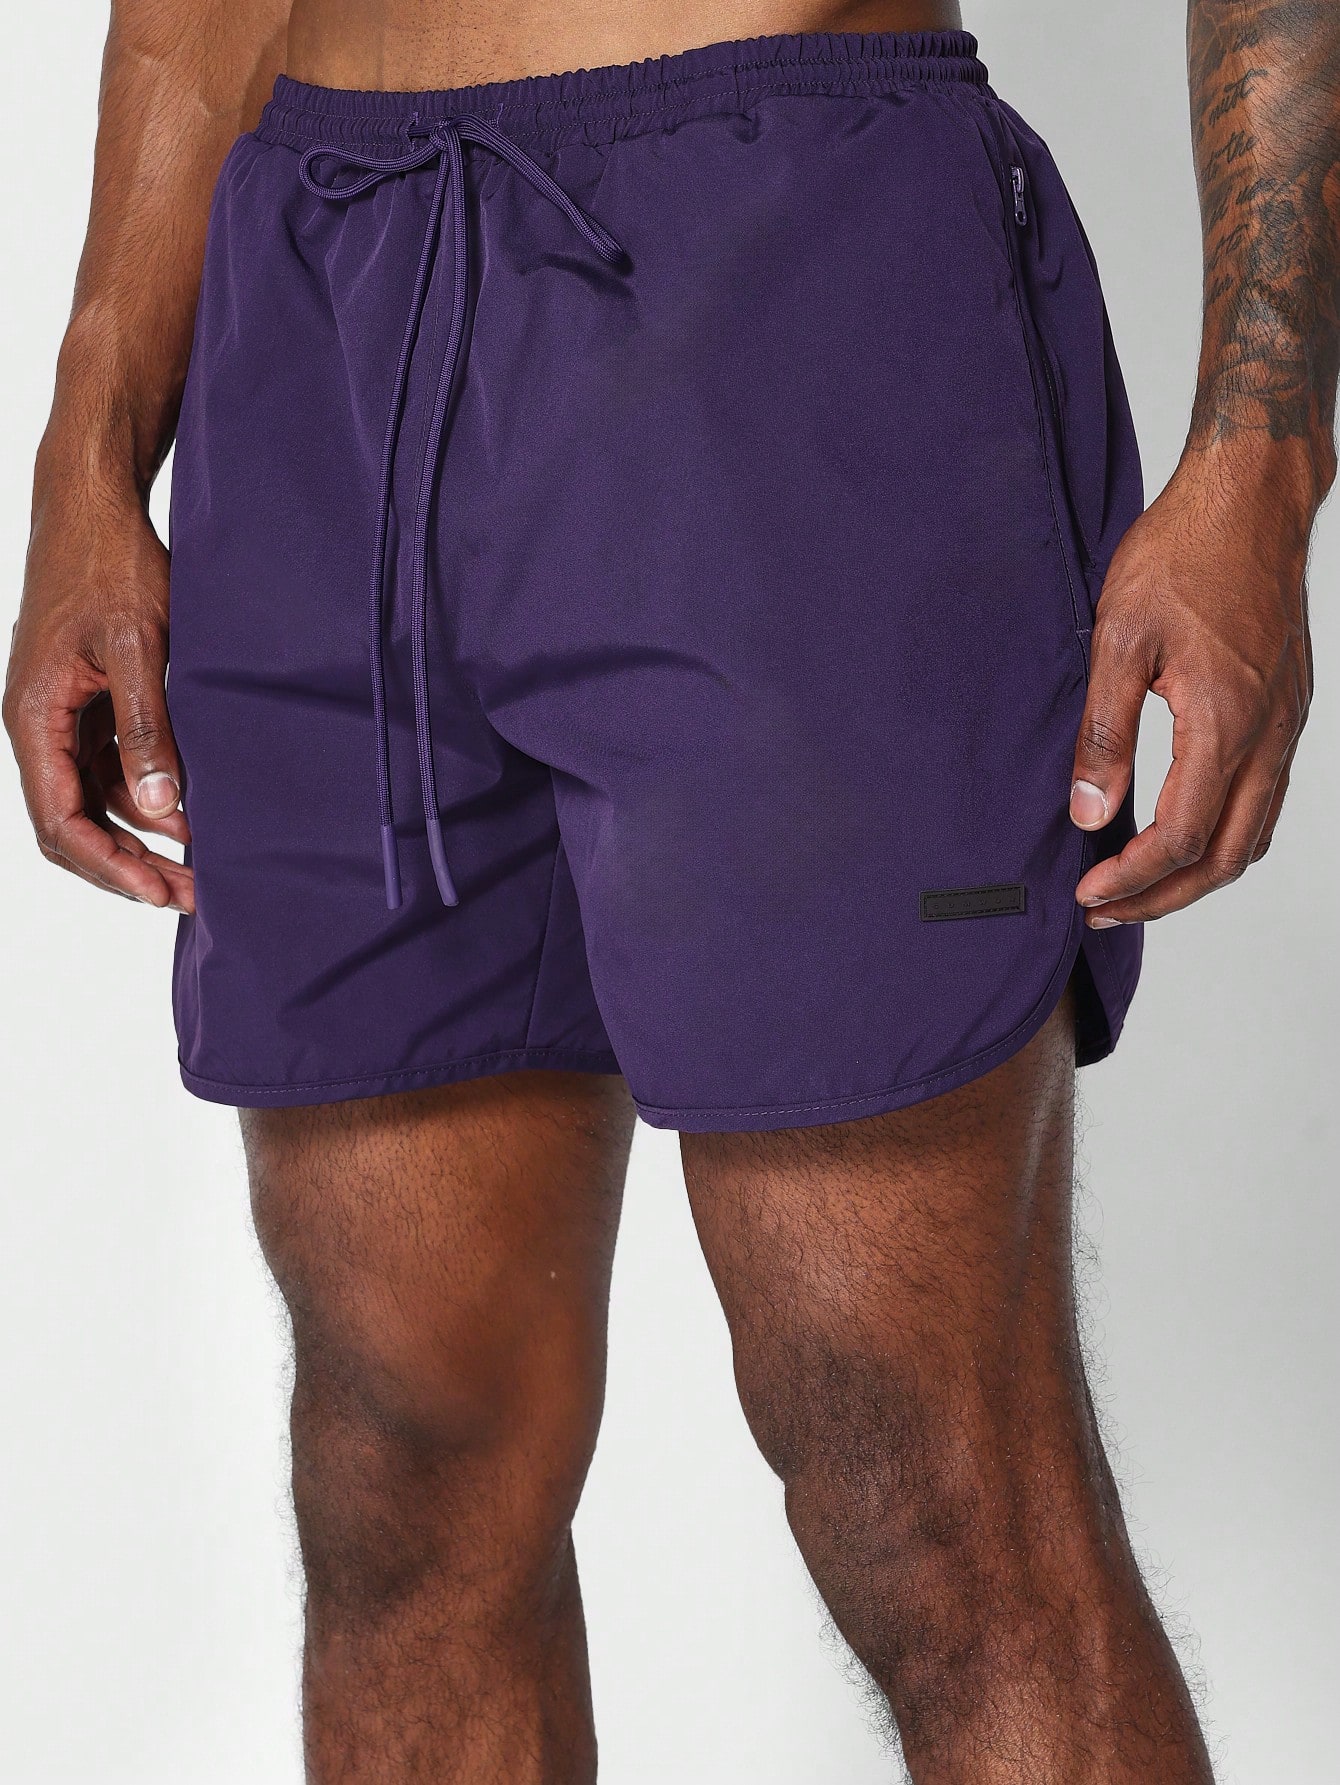 sumwon нейлоновые брюки для костюма мокко браун SUMWON Нейлоновые шорты для плавания, фиолетовый